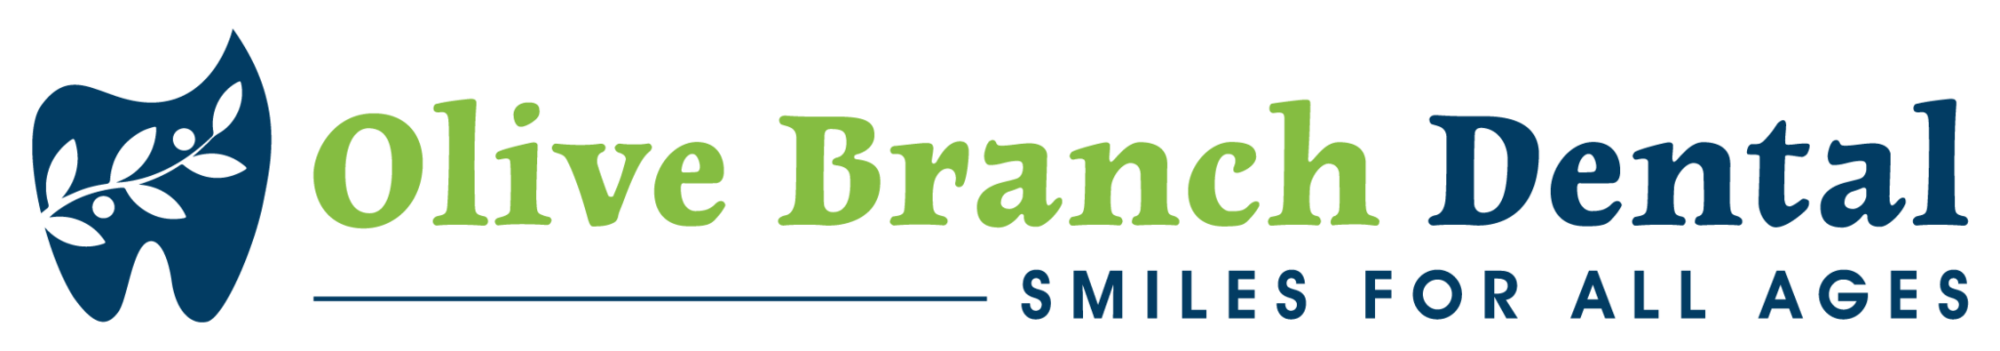 olive-branch-logo-png